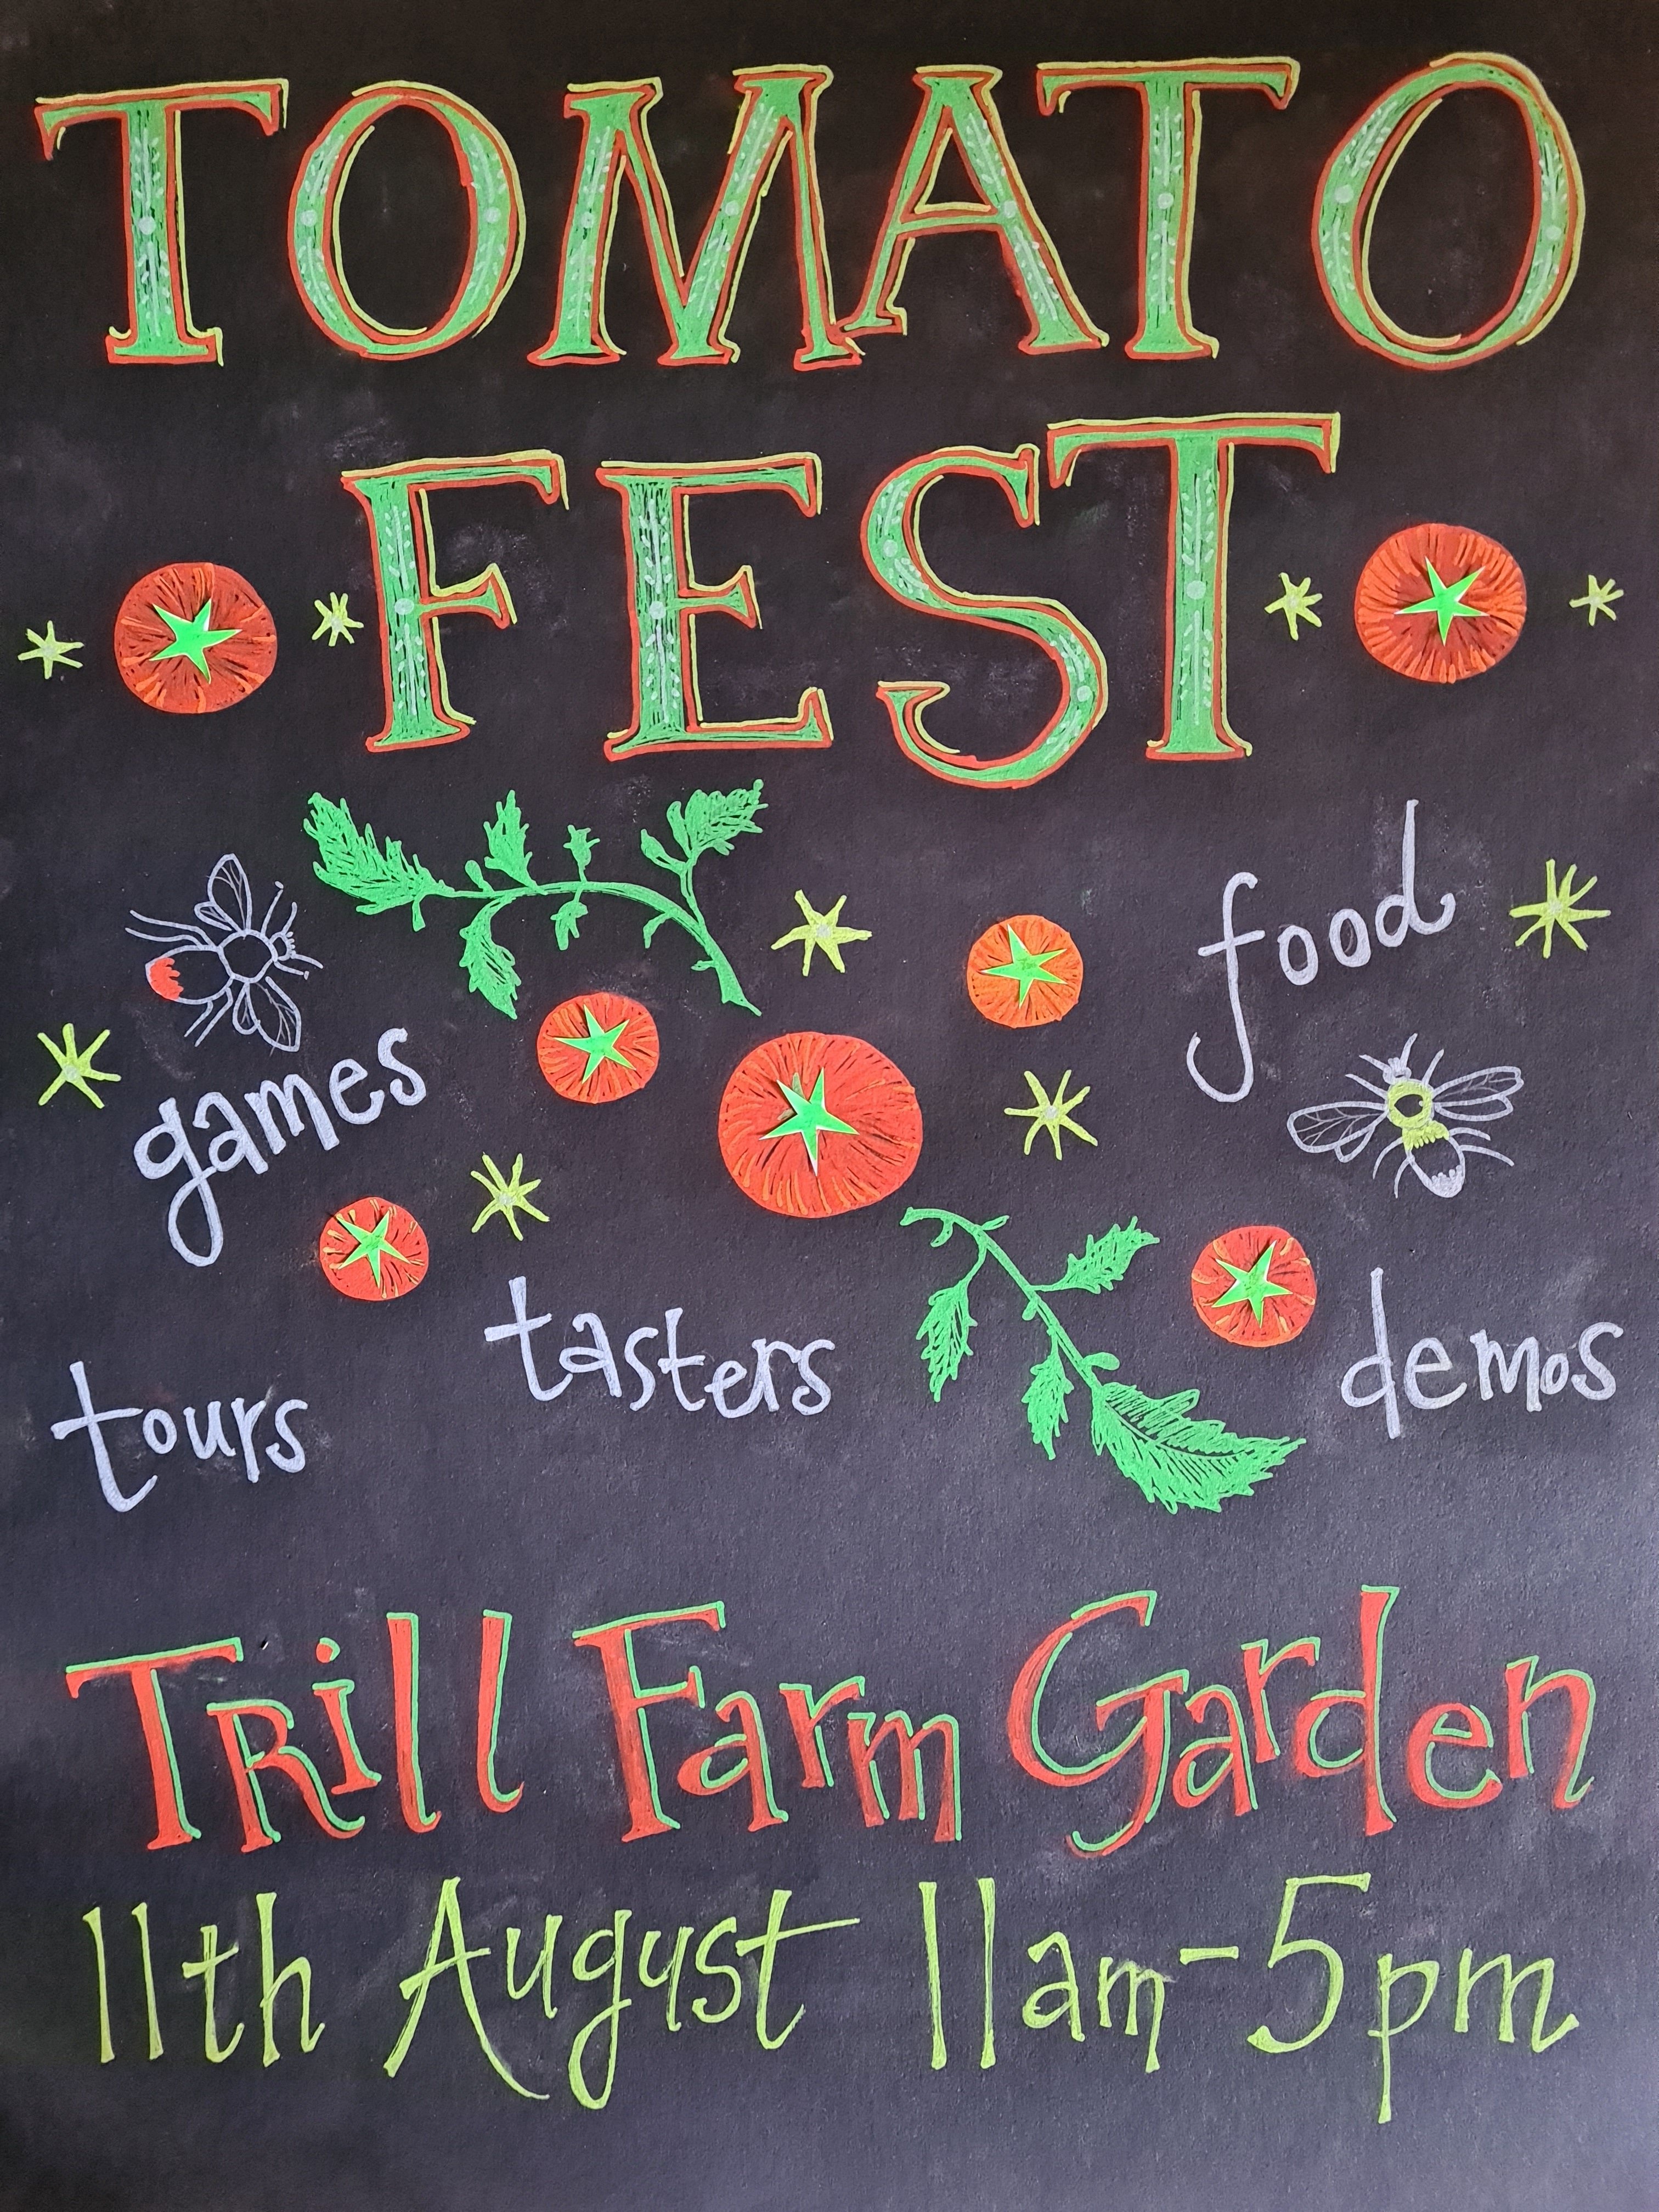 Tomato Fest